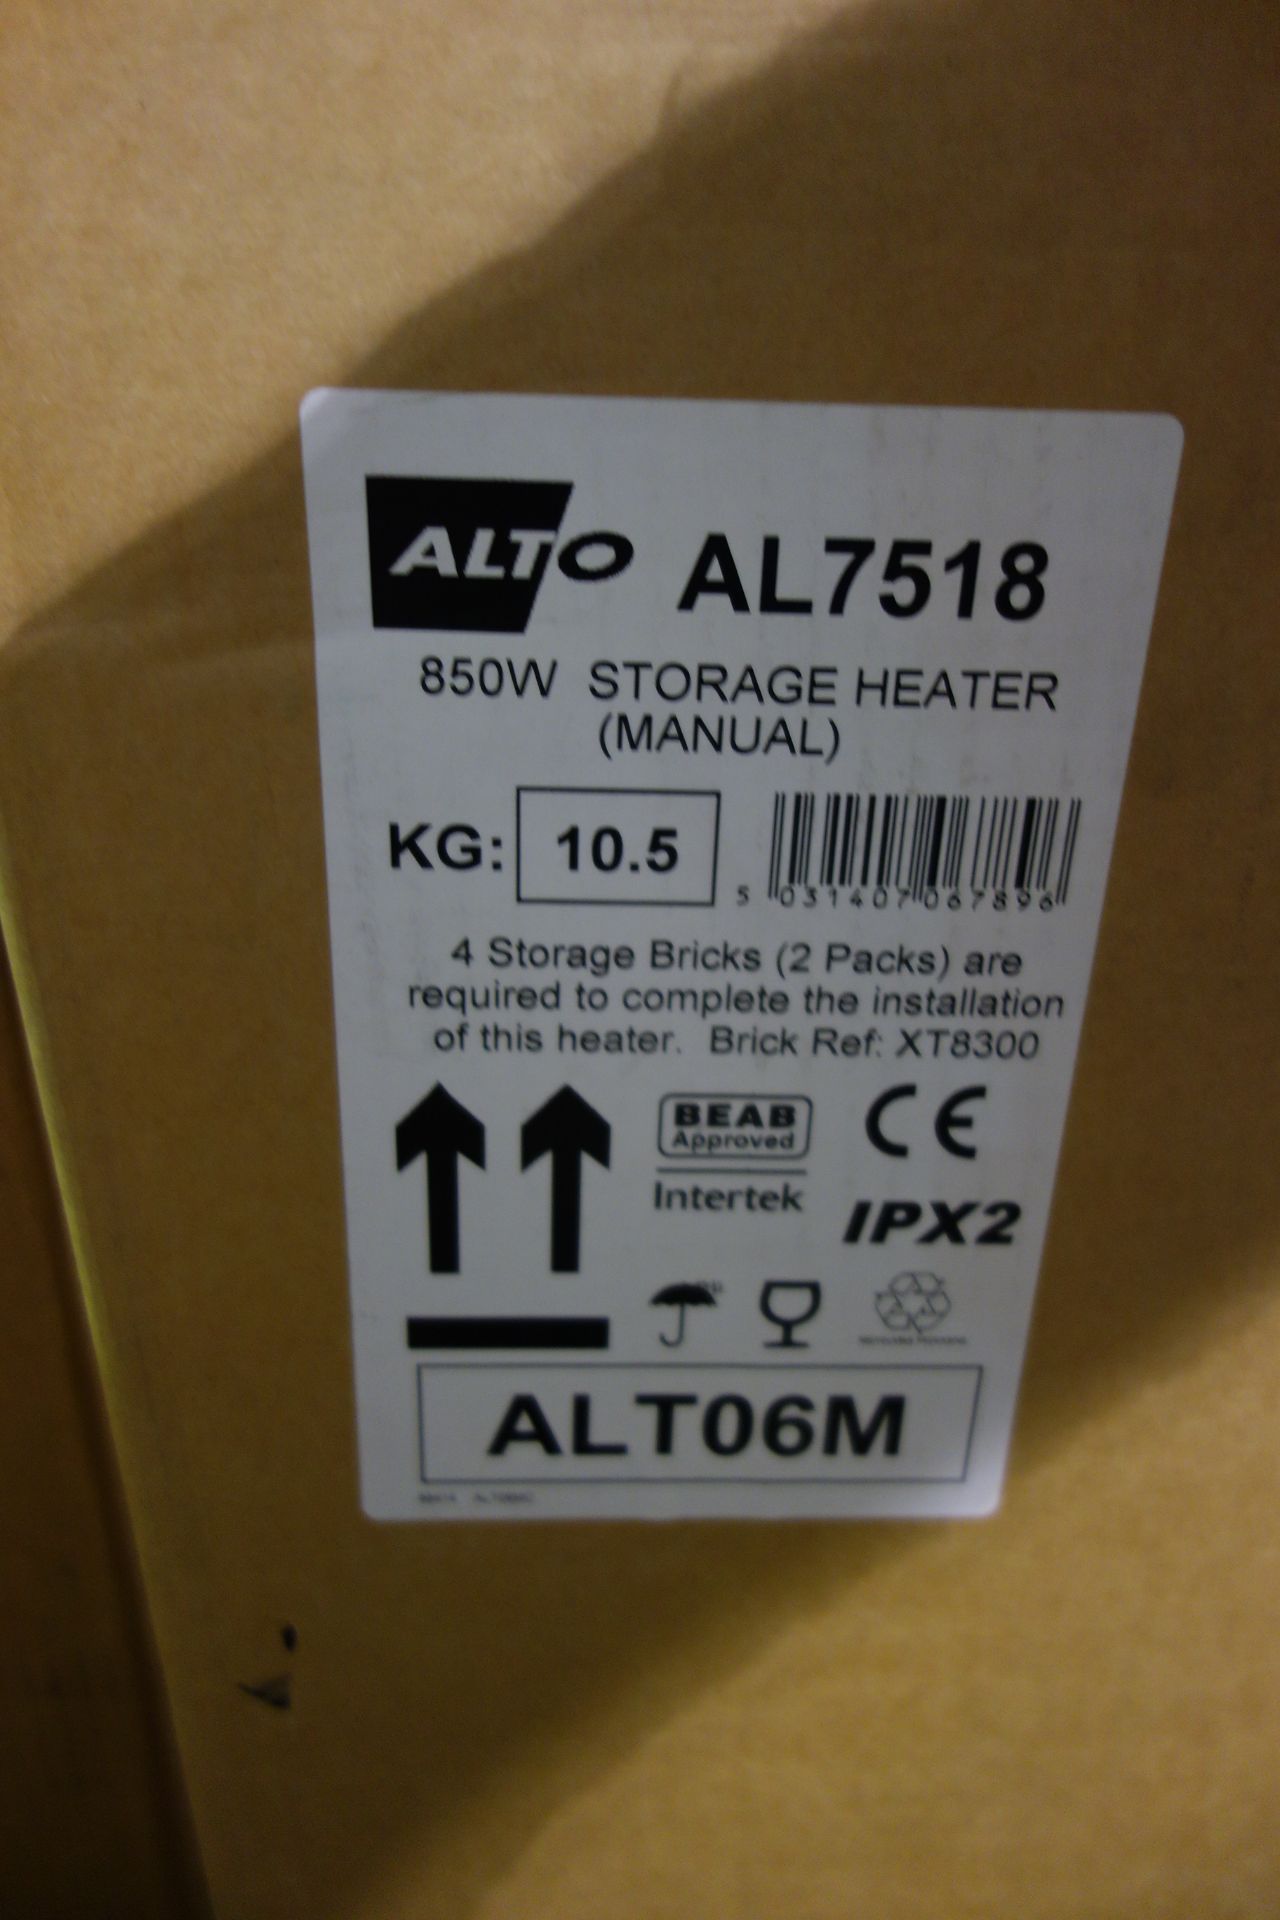 1 X Alto AL7518 850W Storage Heater Manual 4 X Storage Bricks 2 X Packs Are Needed For Heater 1 X